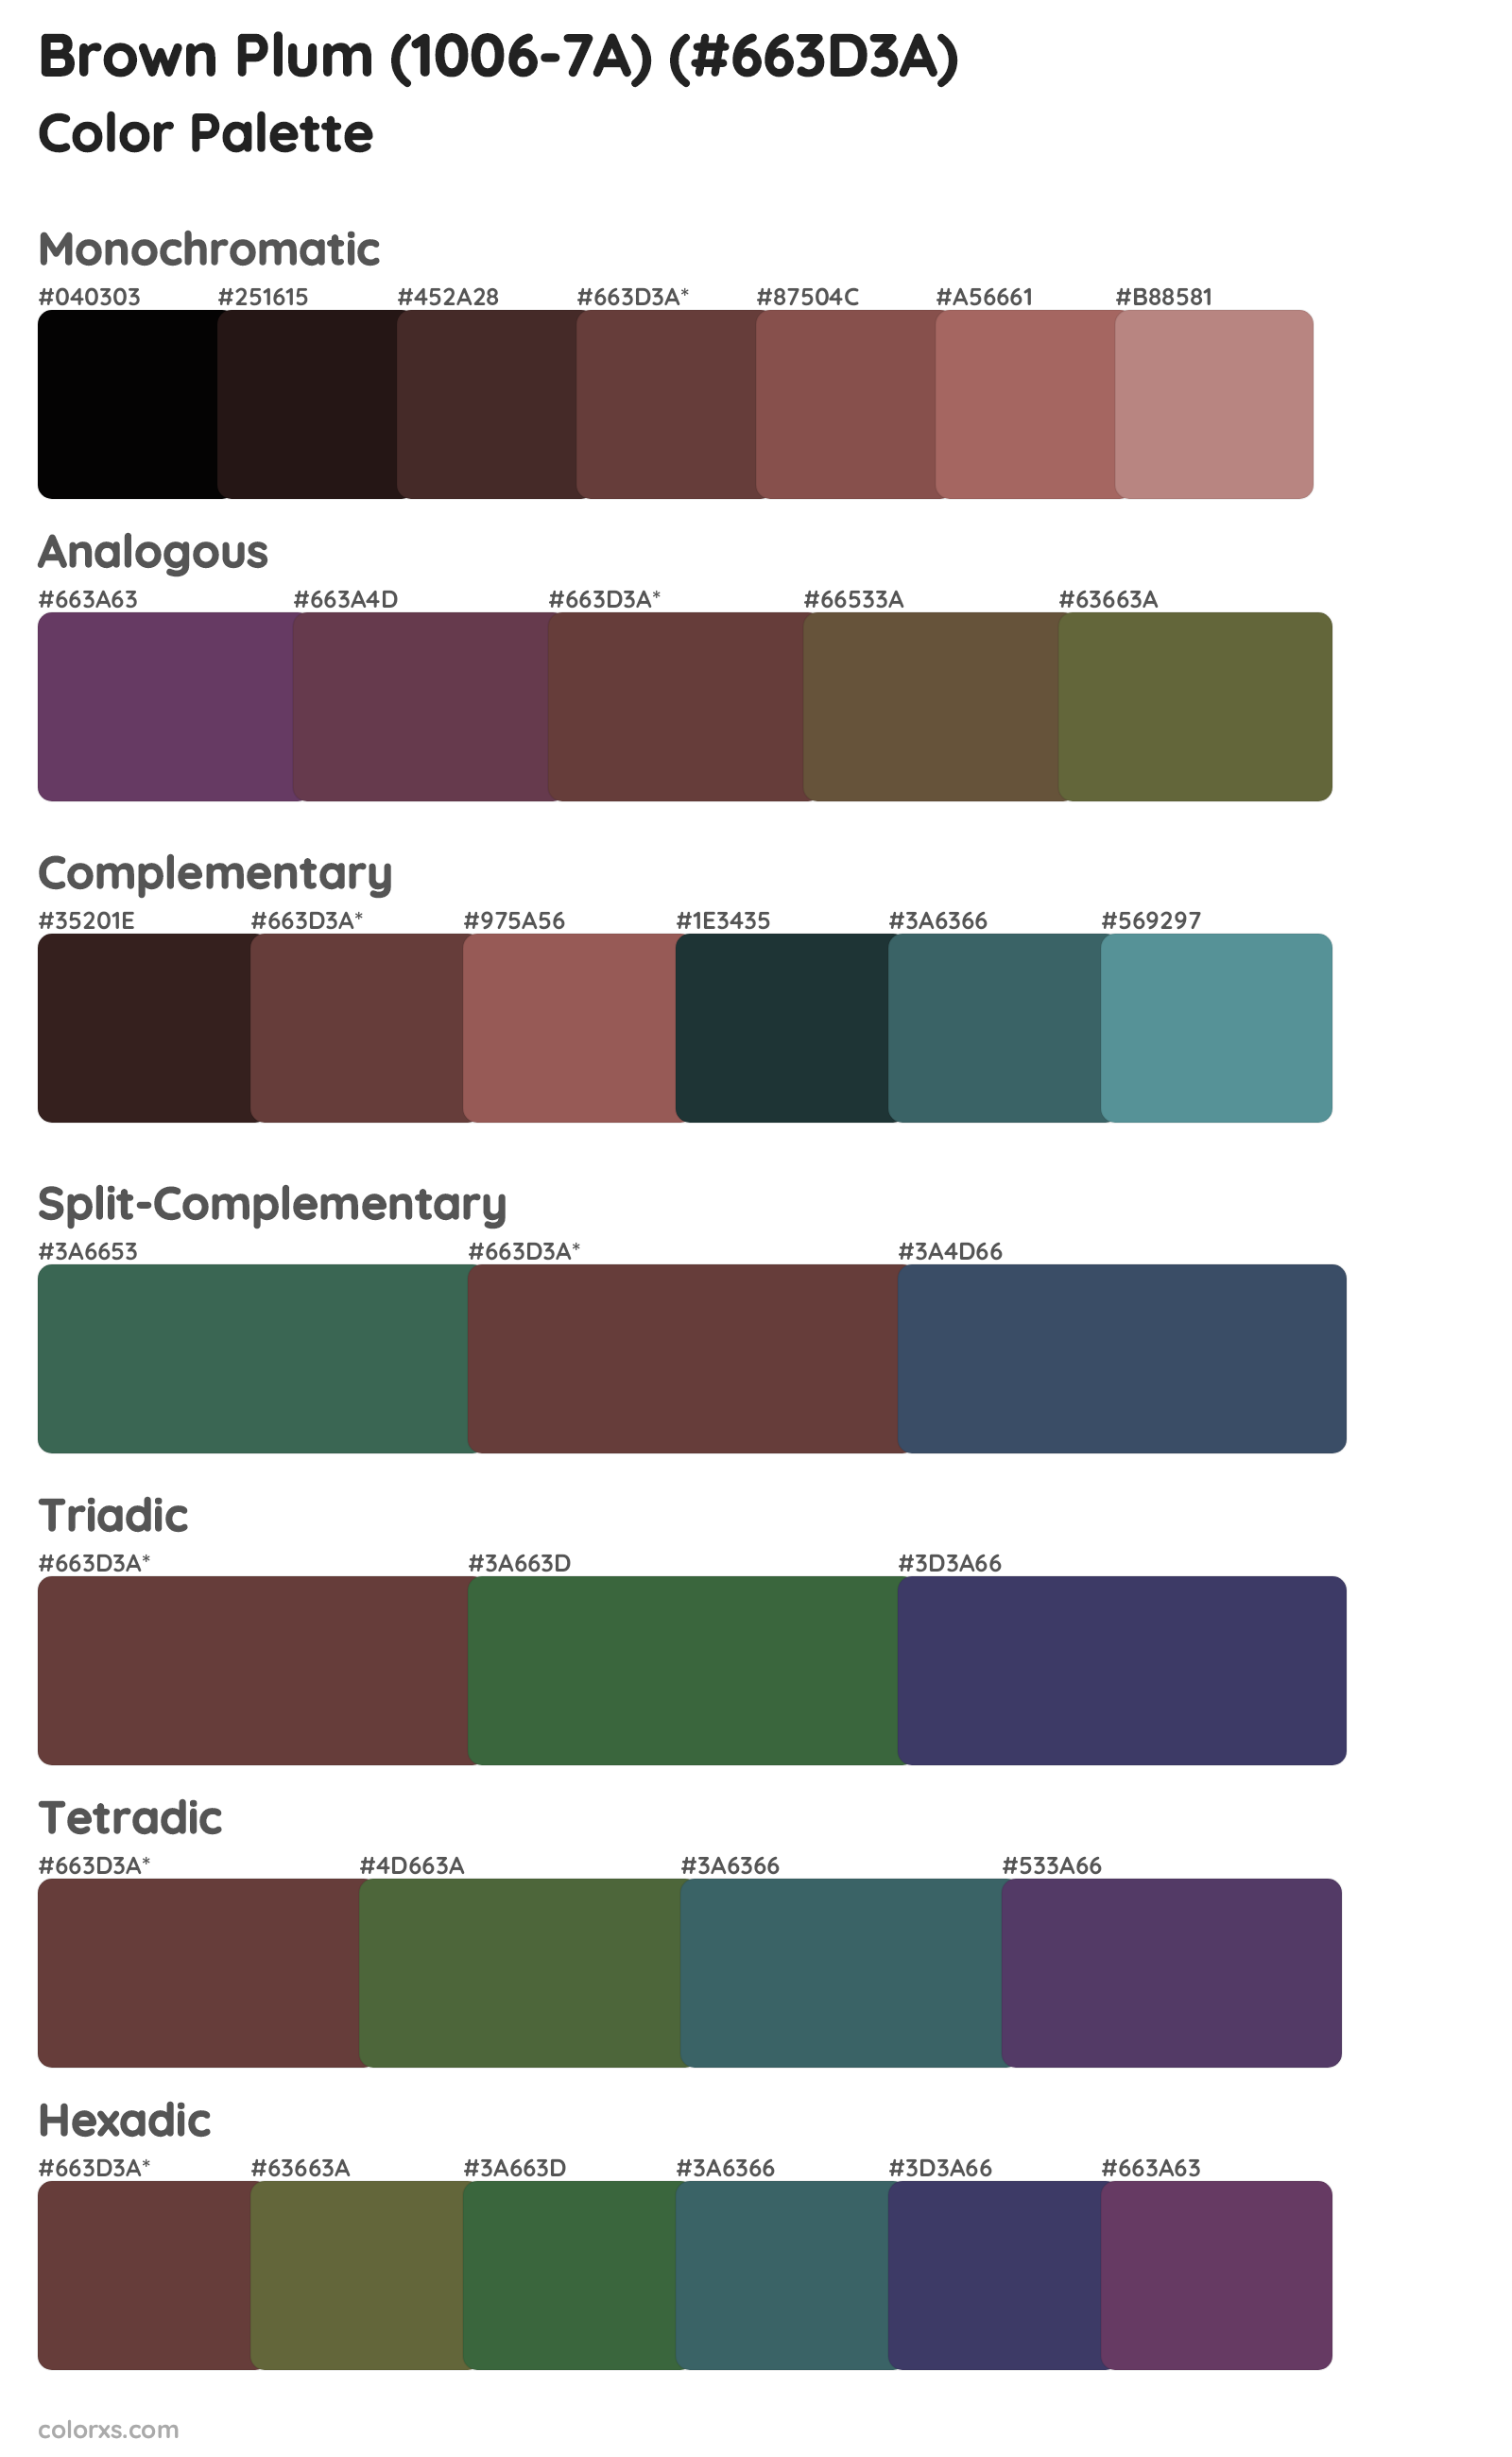 Brown Plum (1006-7A) Color Scheme Palettes